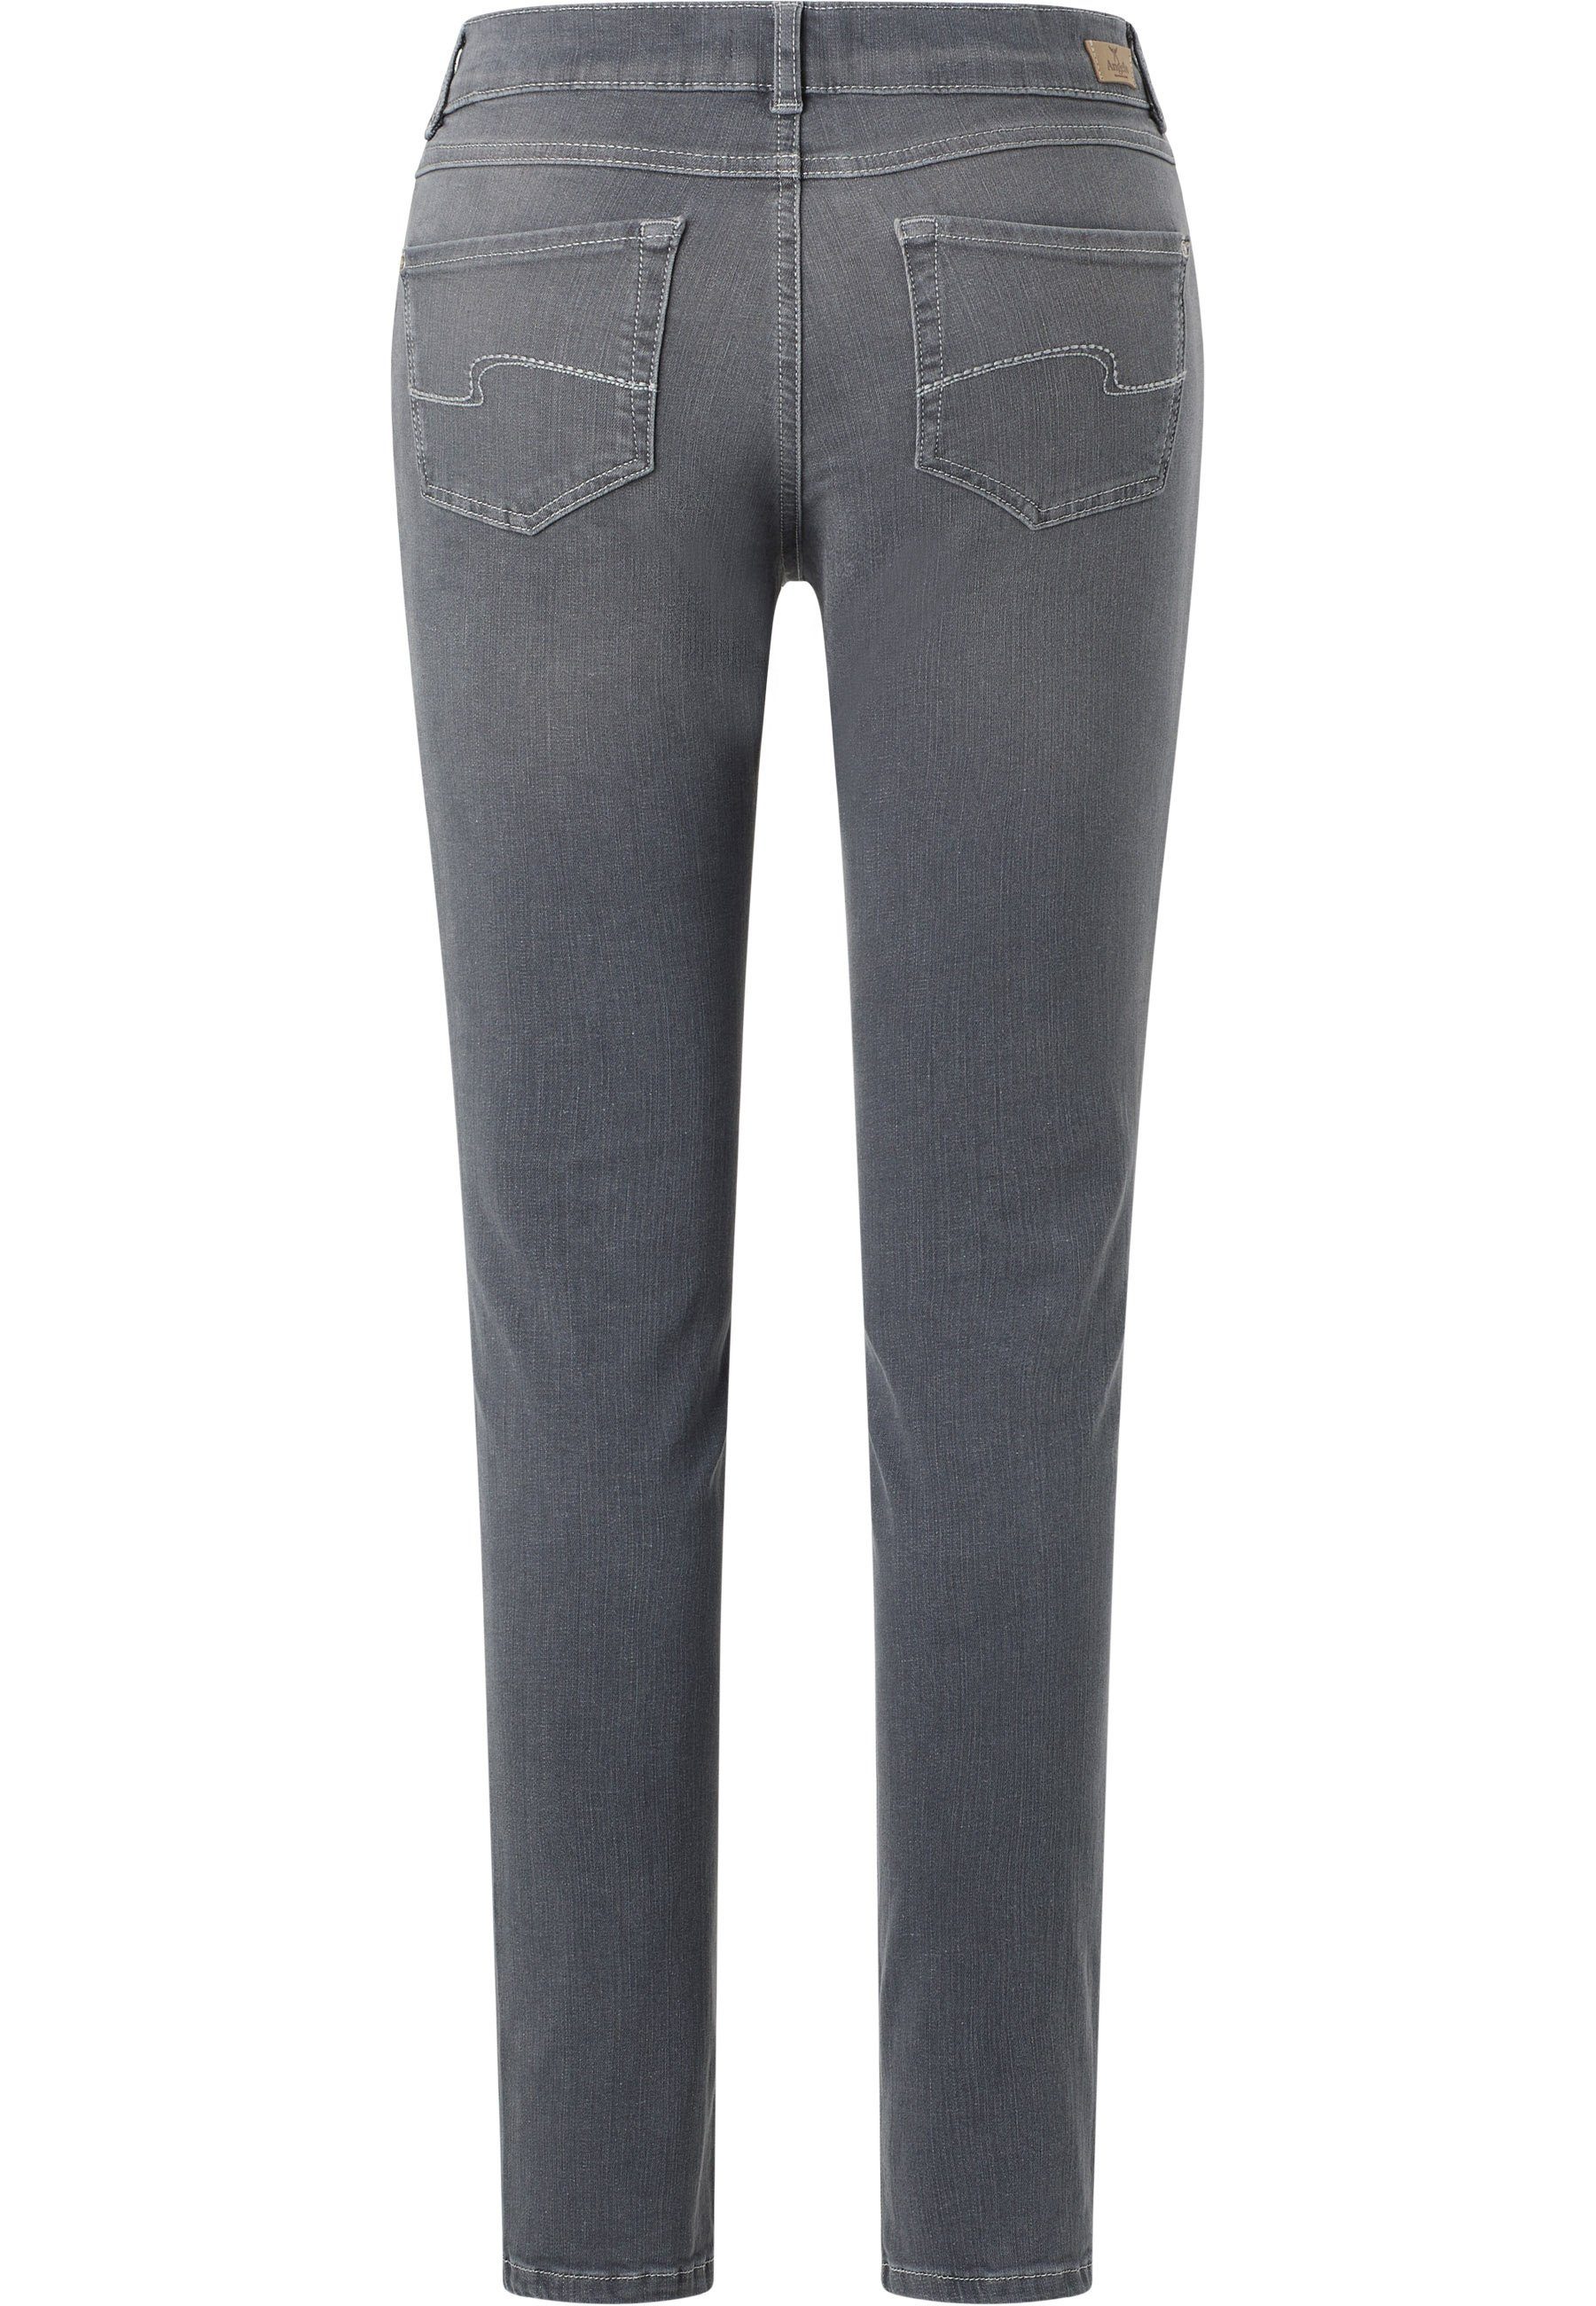 ANGELS Slim-fit-Jeans Jeans Skinny mit grau Label-Applikationen mit authentischem Denim